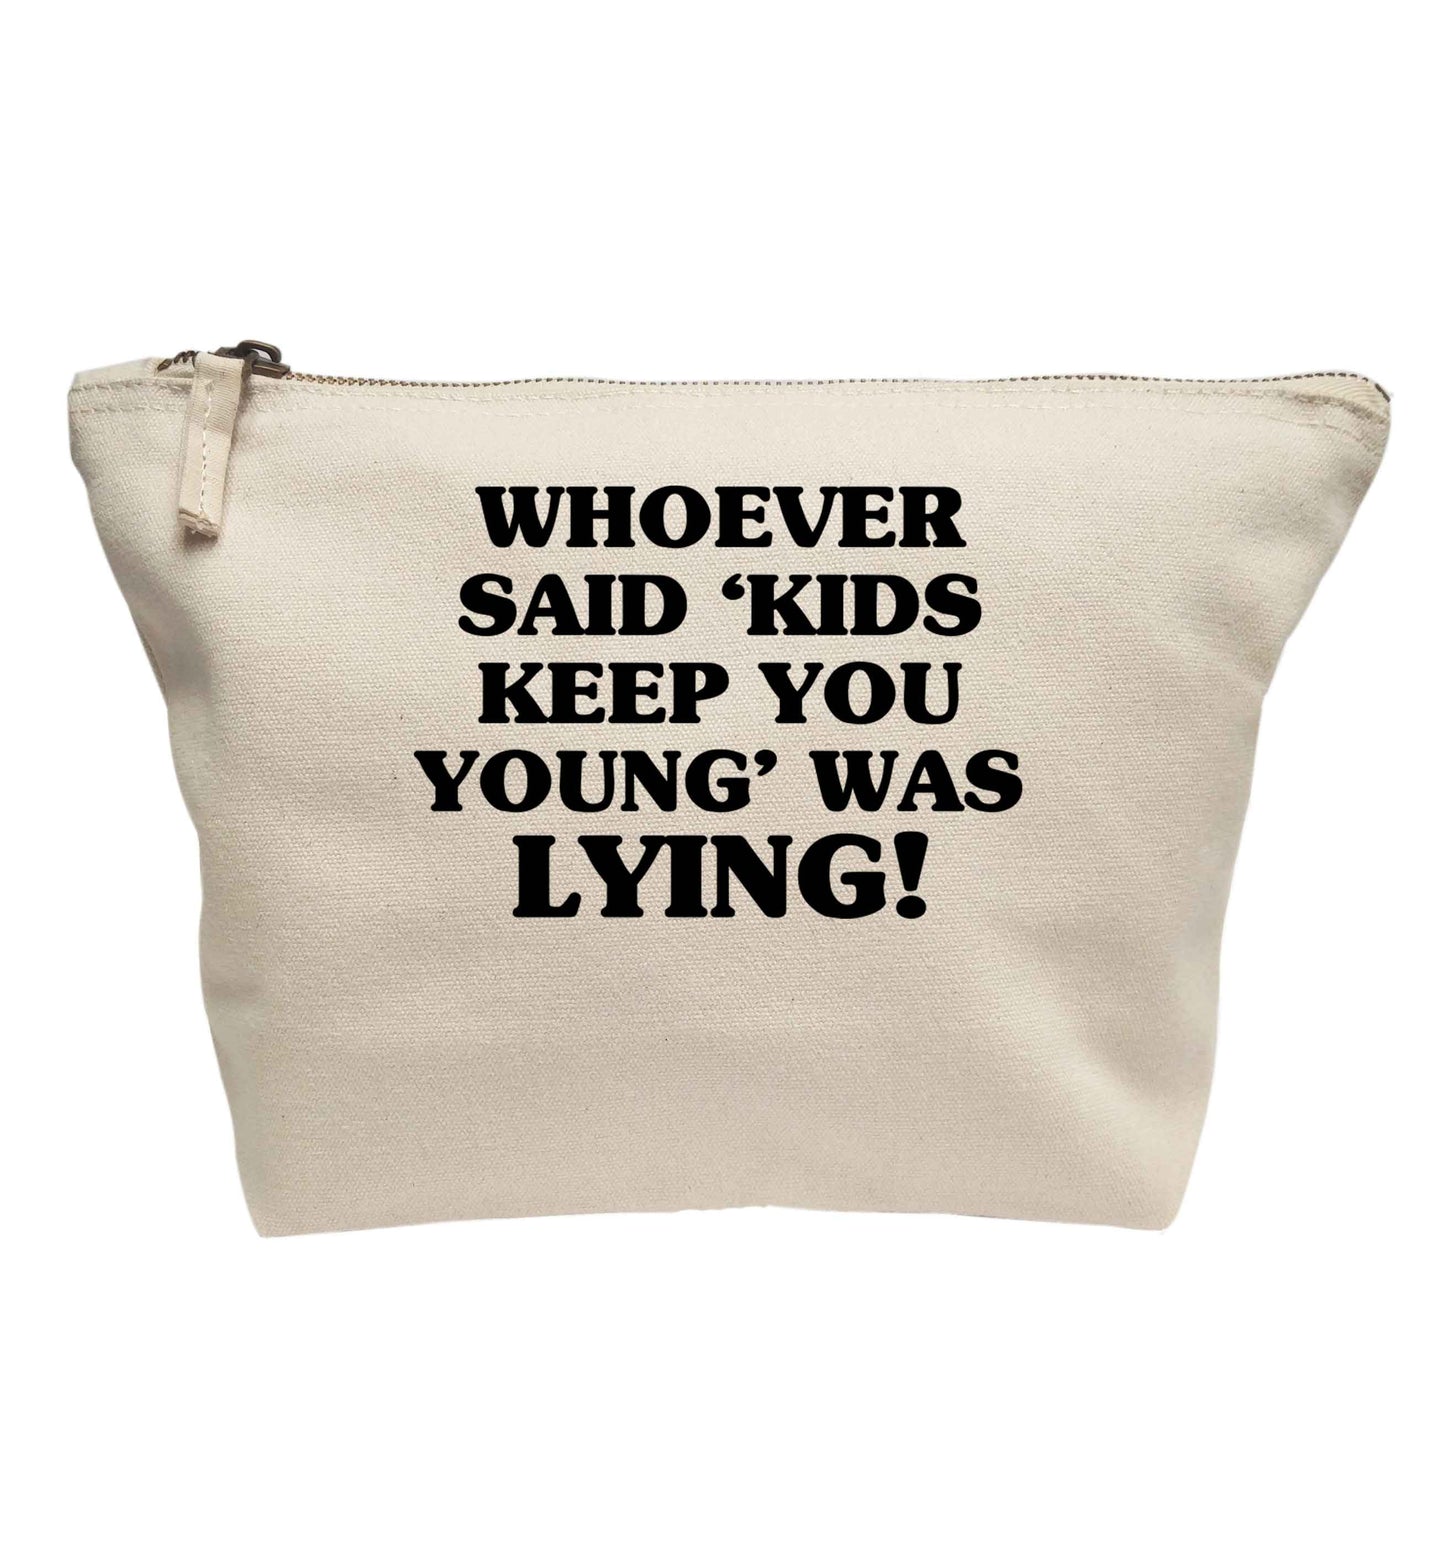 Whoever said 'kids keep you young' was lying! | makeup / wash bag